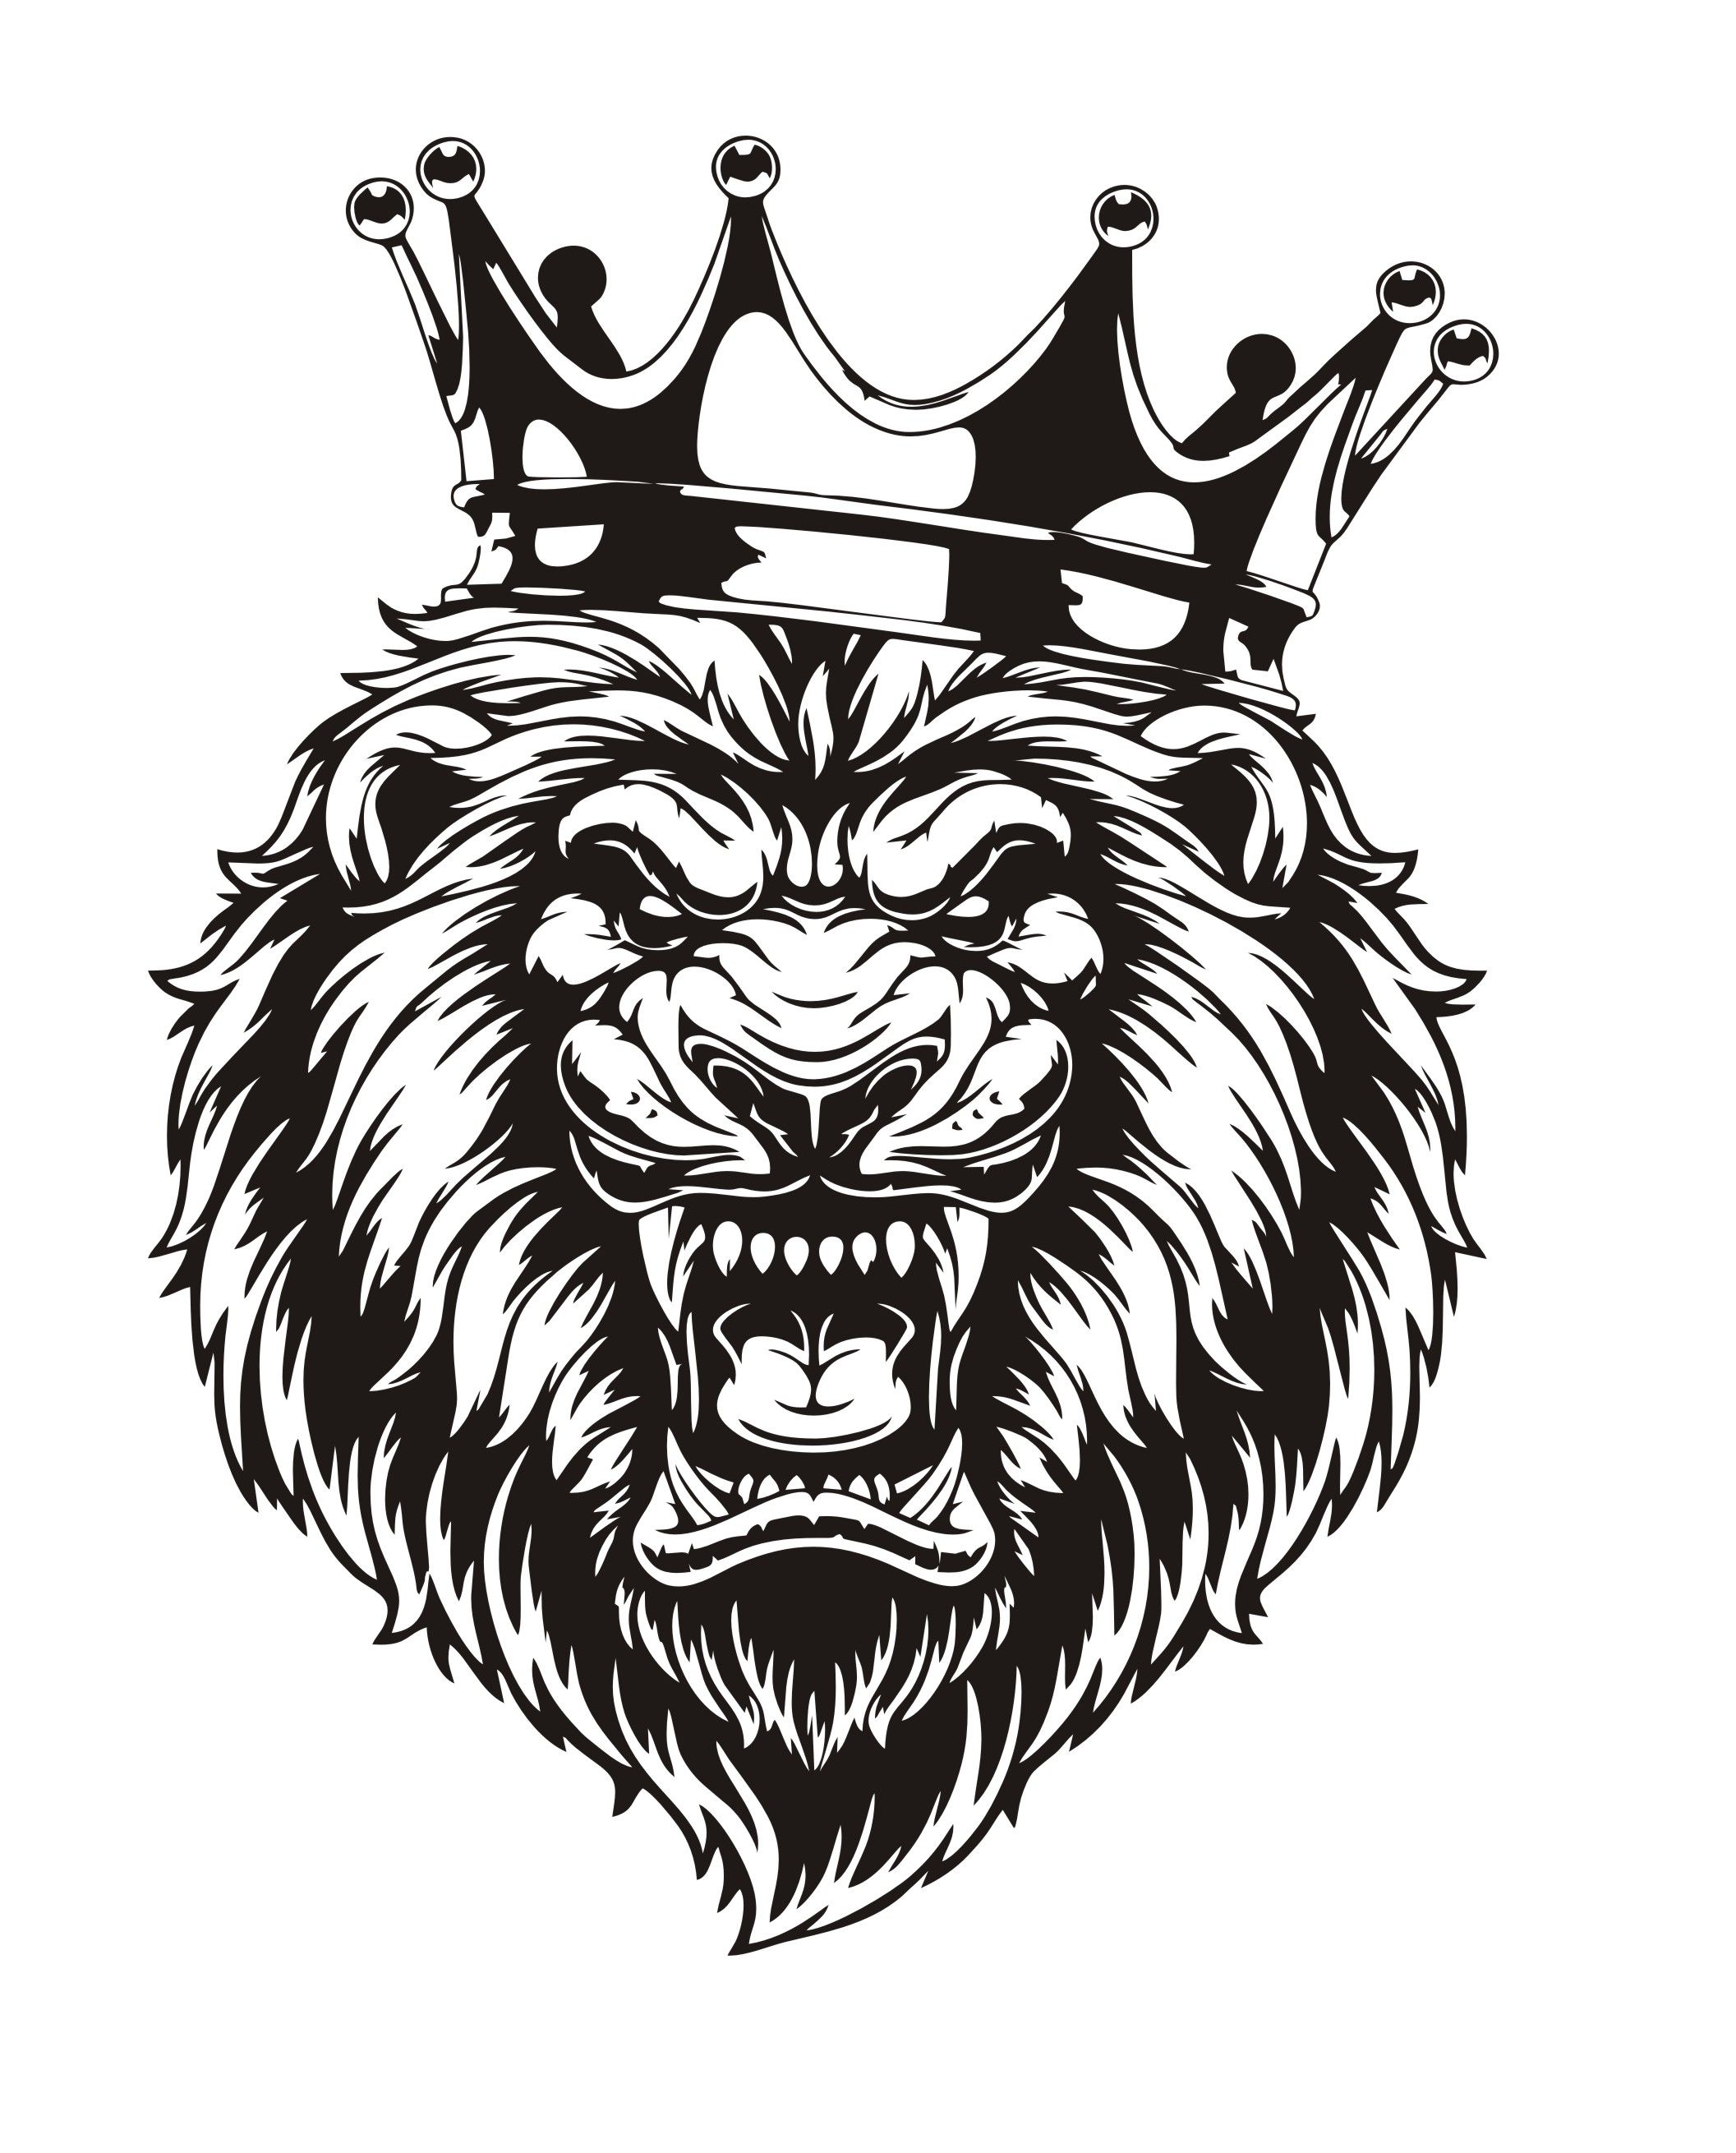 Лев с короной на голове. Наклейка Лев. Лев с короной рисунок. Медведь с короной. Купить лев 25